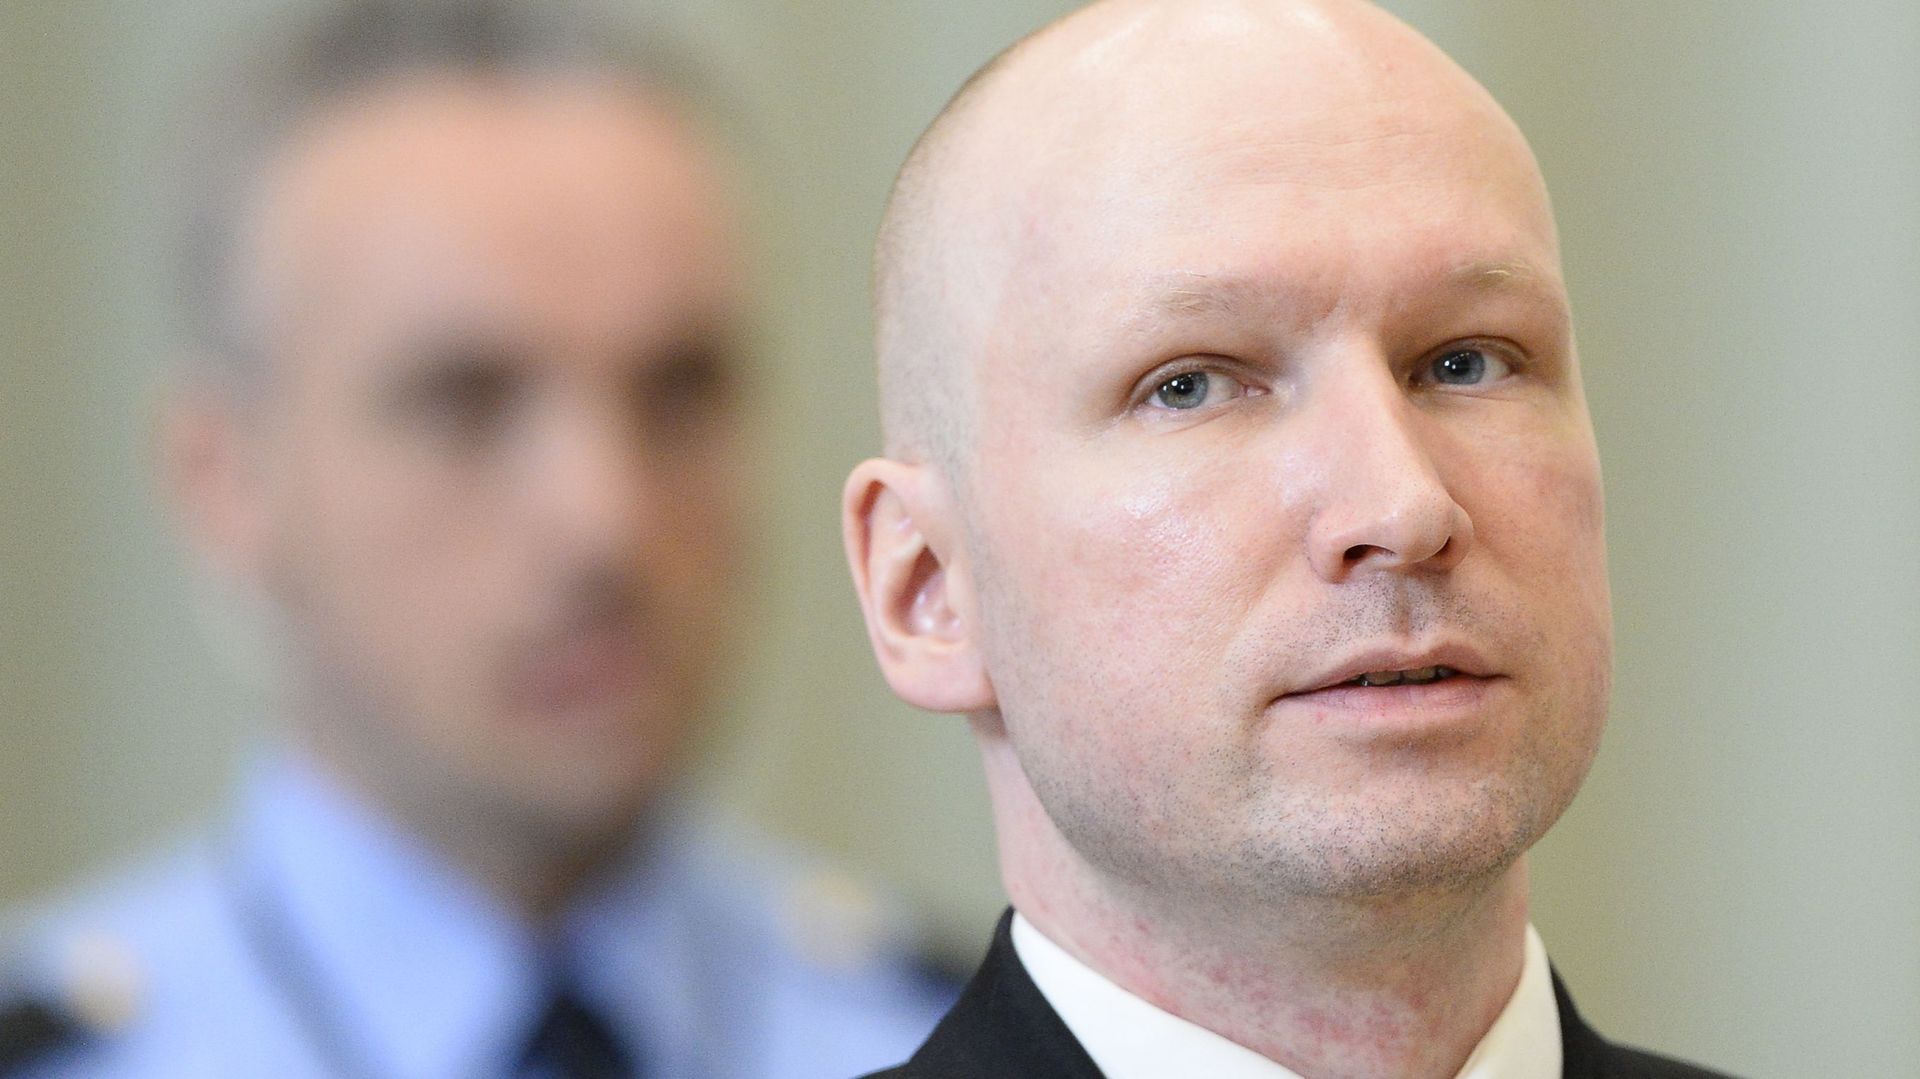 A l'issue d'un procès en 2012, Anders Behring Breivik est condamné à la peine maximale en Norvège, soit 21 ans de prison prolongeables.